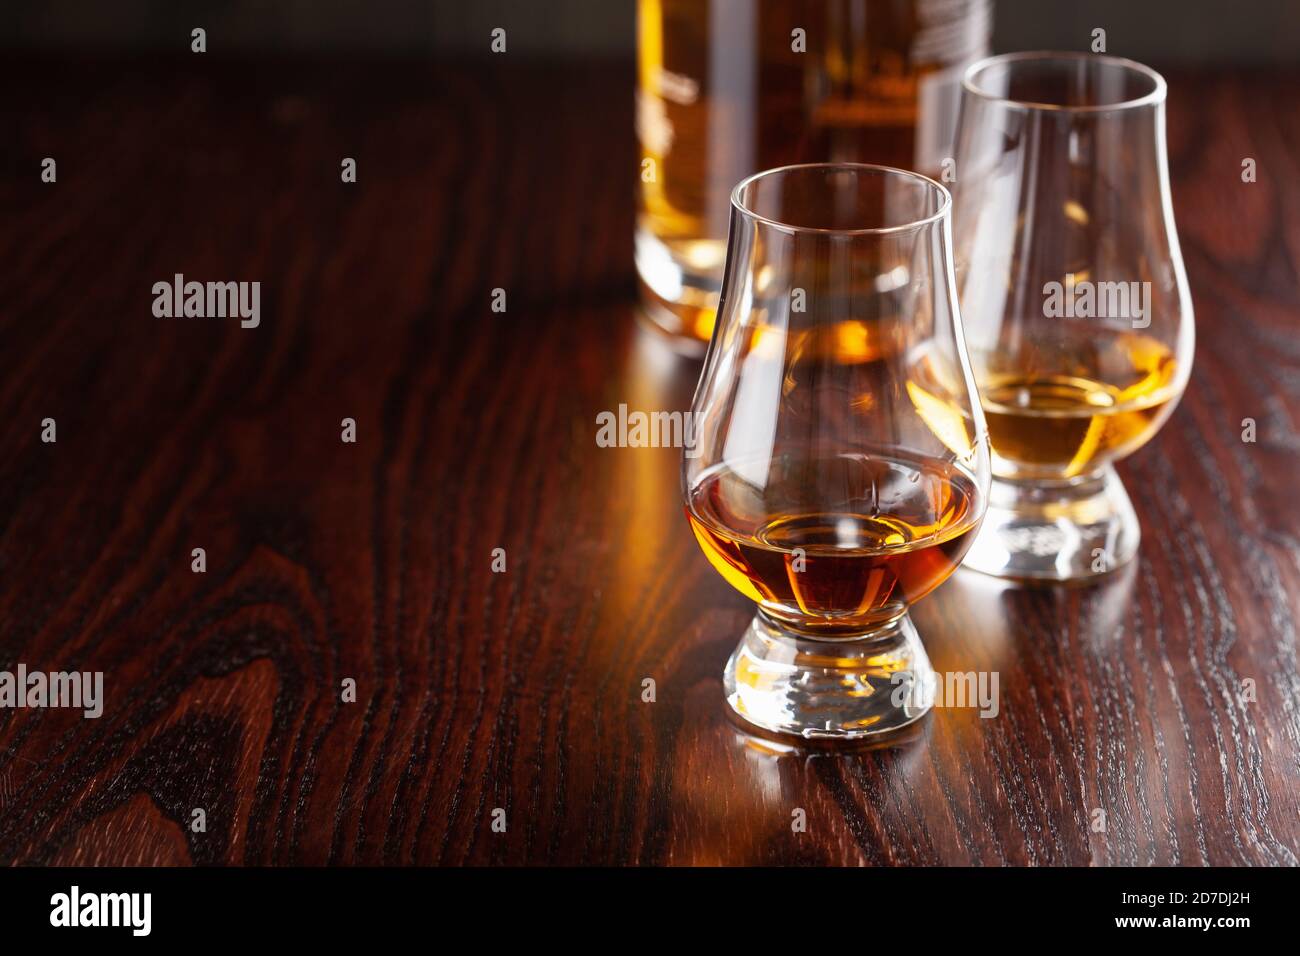 Glas Whisky-Spirituosen Brandy auf dunkelbraunem Hintergrund Stockfoto